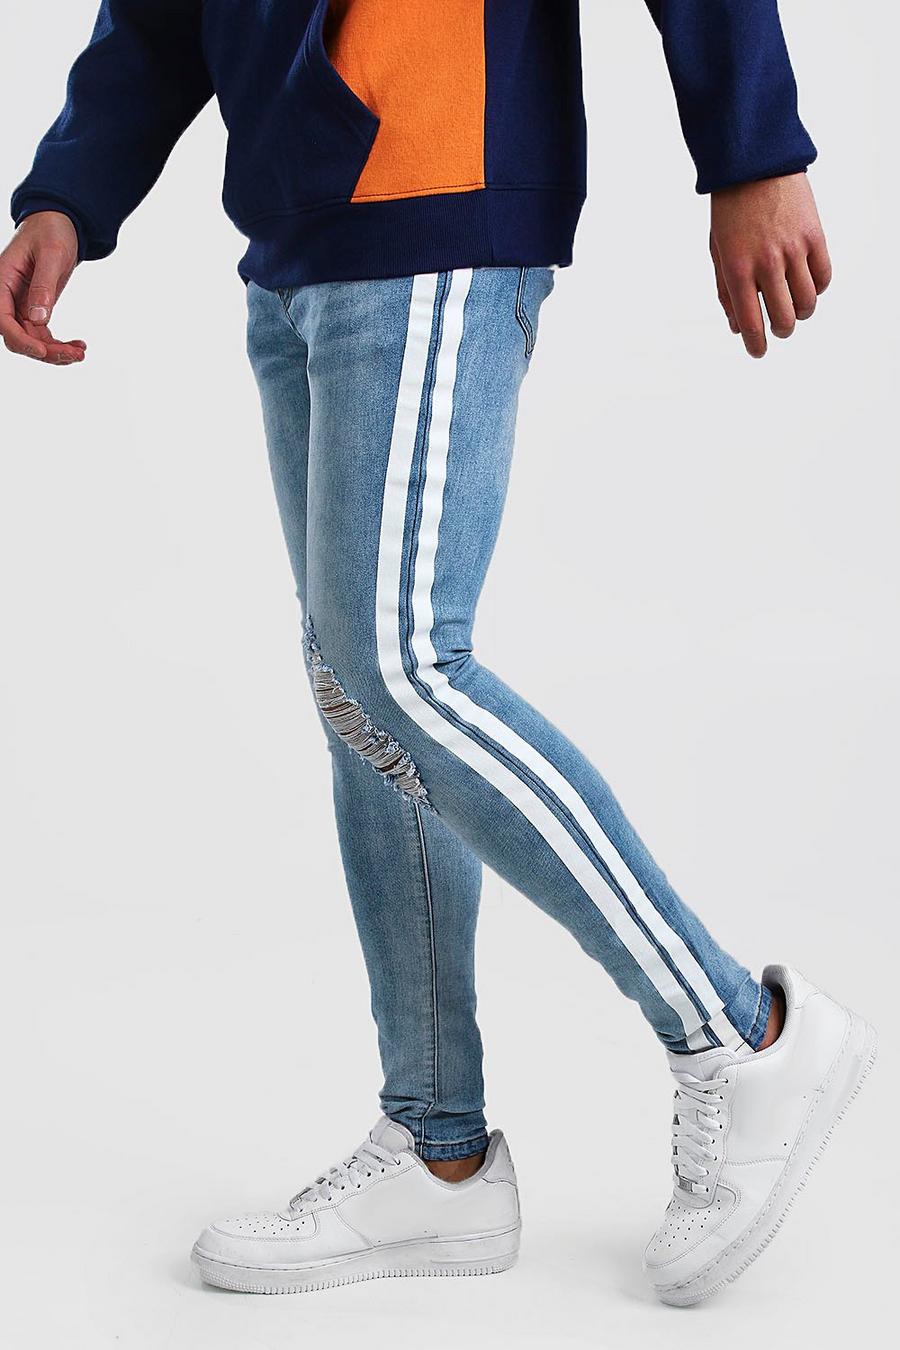 כחול בהיר סופר סקיני ג'ינס פסים צבועים עם קרעים image number 1